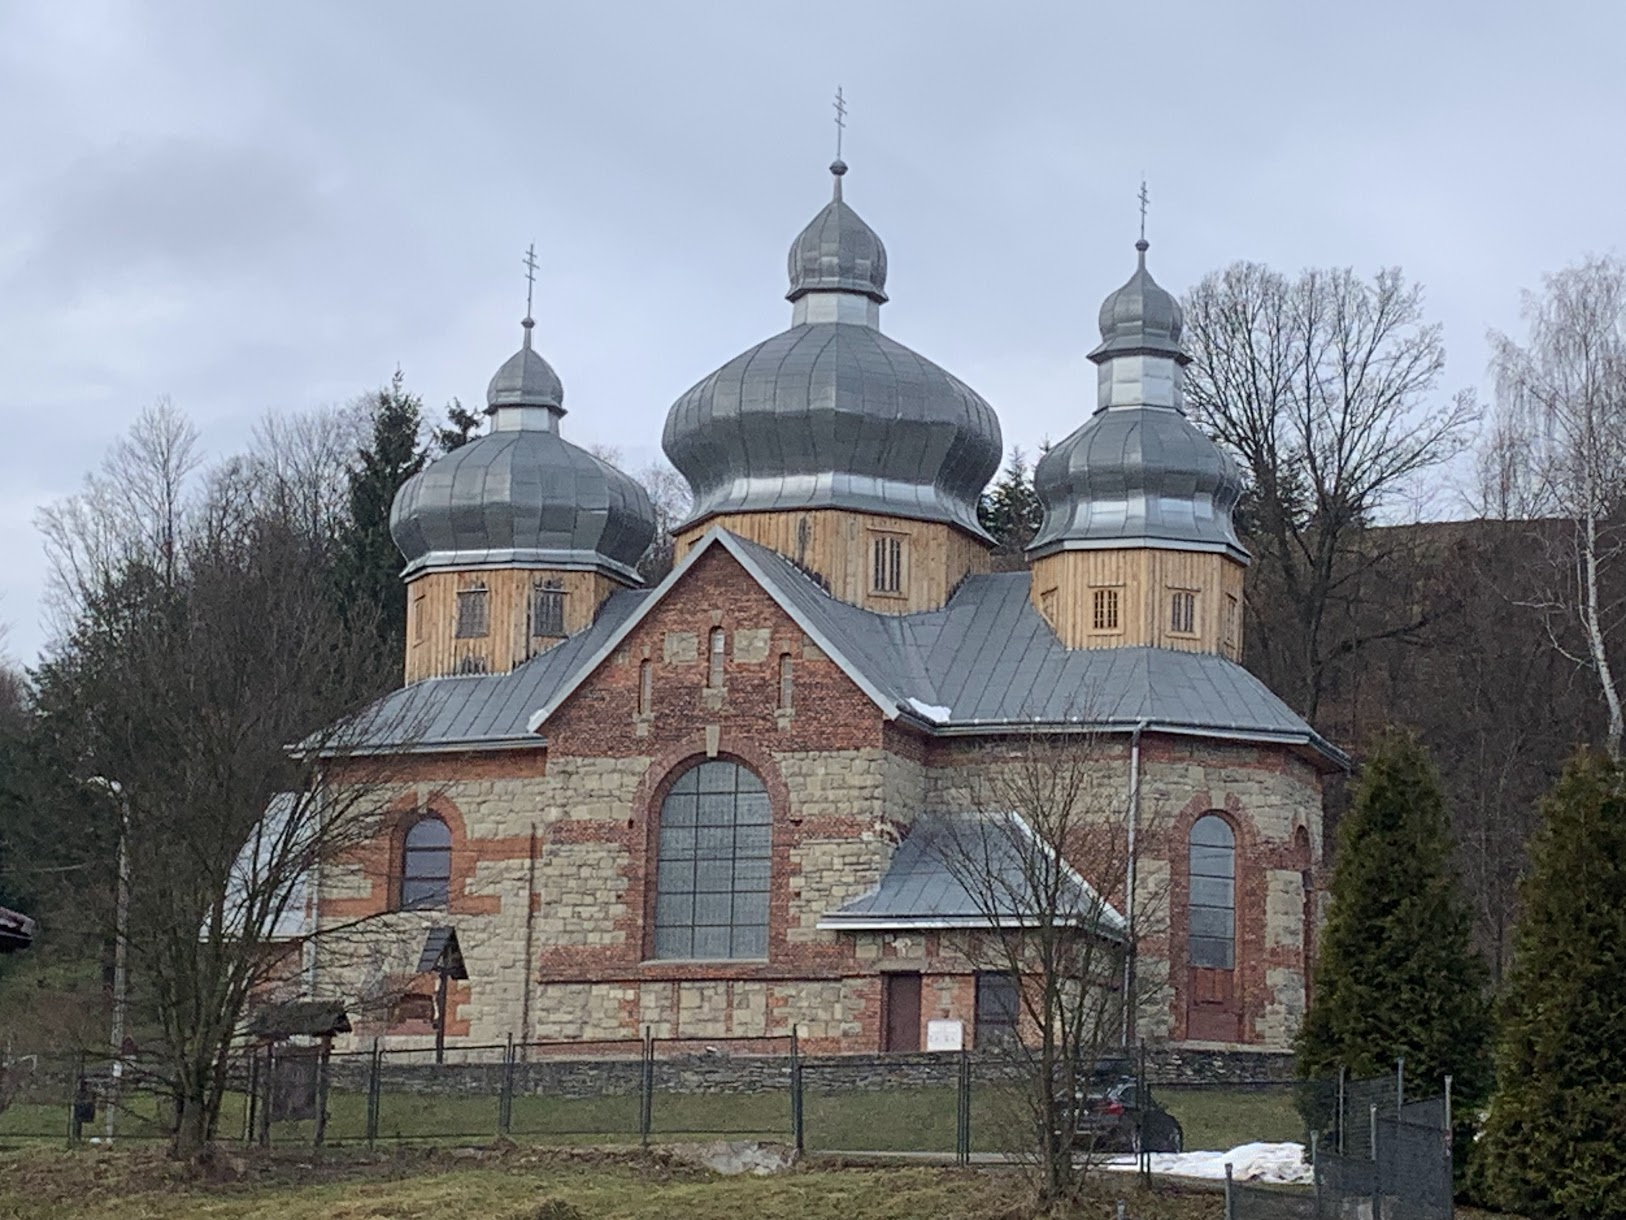 Murowana cerkiew w stylu bojkowskim w Żegiestowie